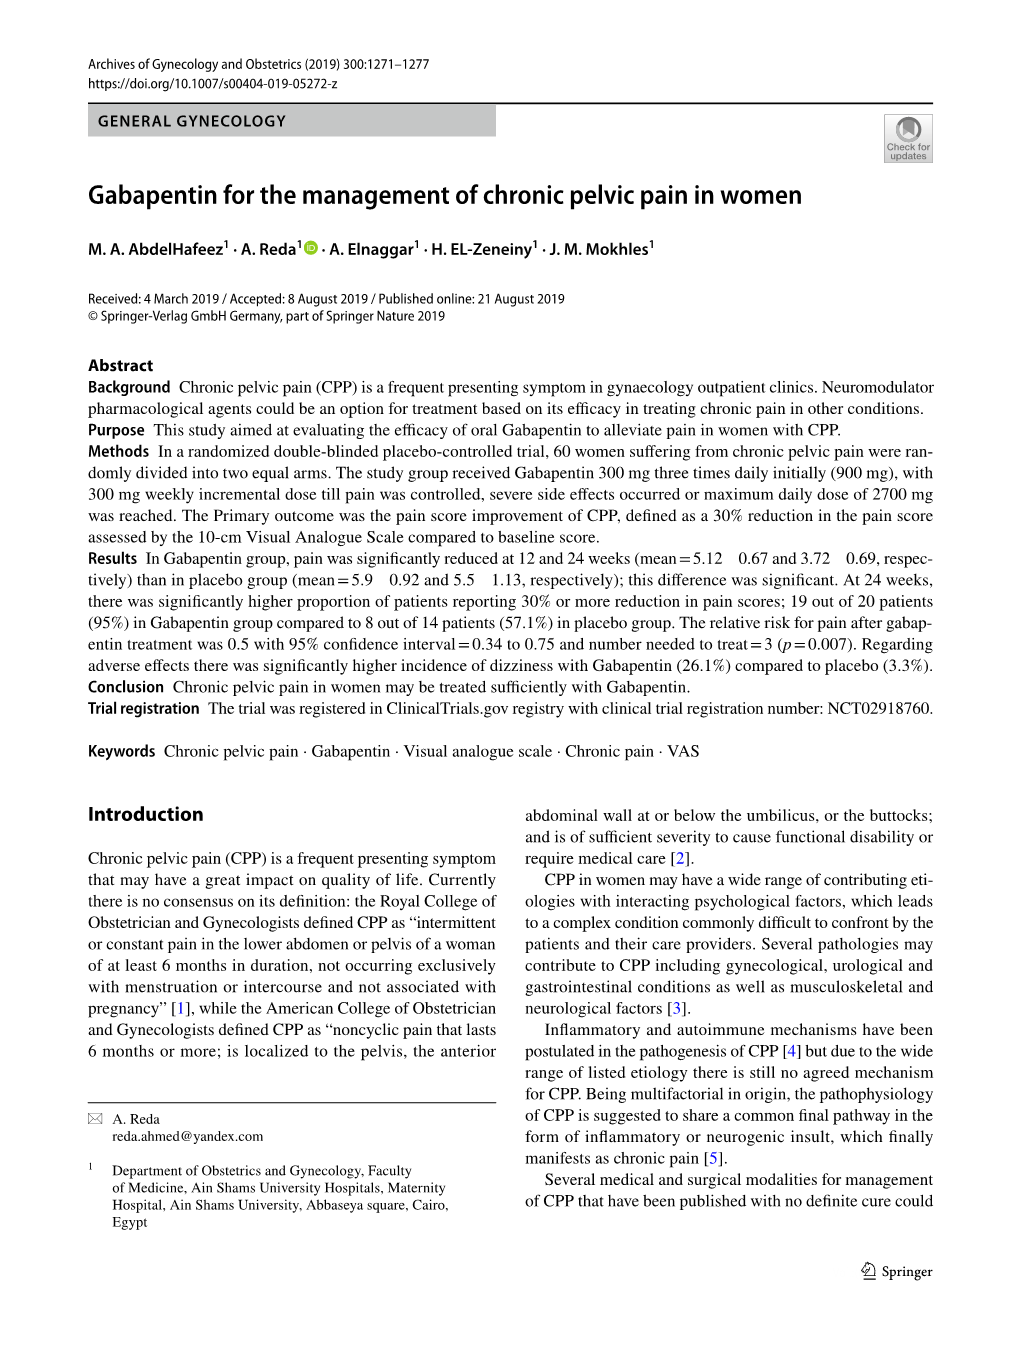 Gabapentin for the Management of Chronic Pelvic Pain in Women